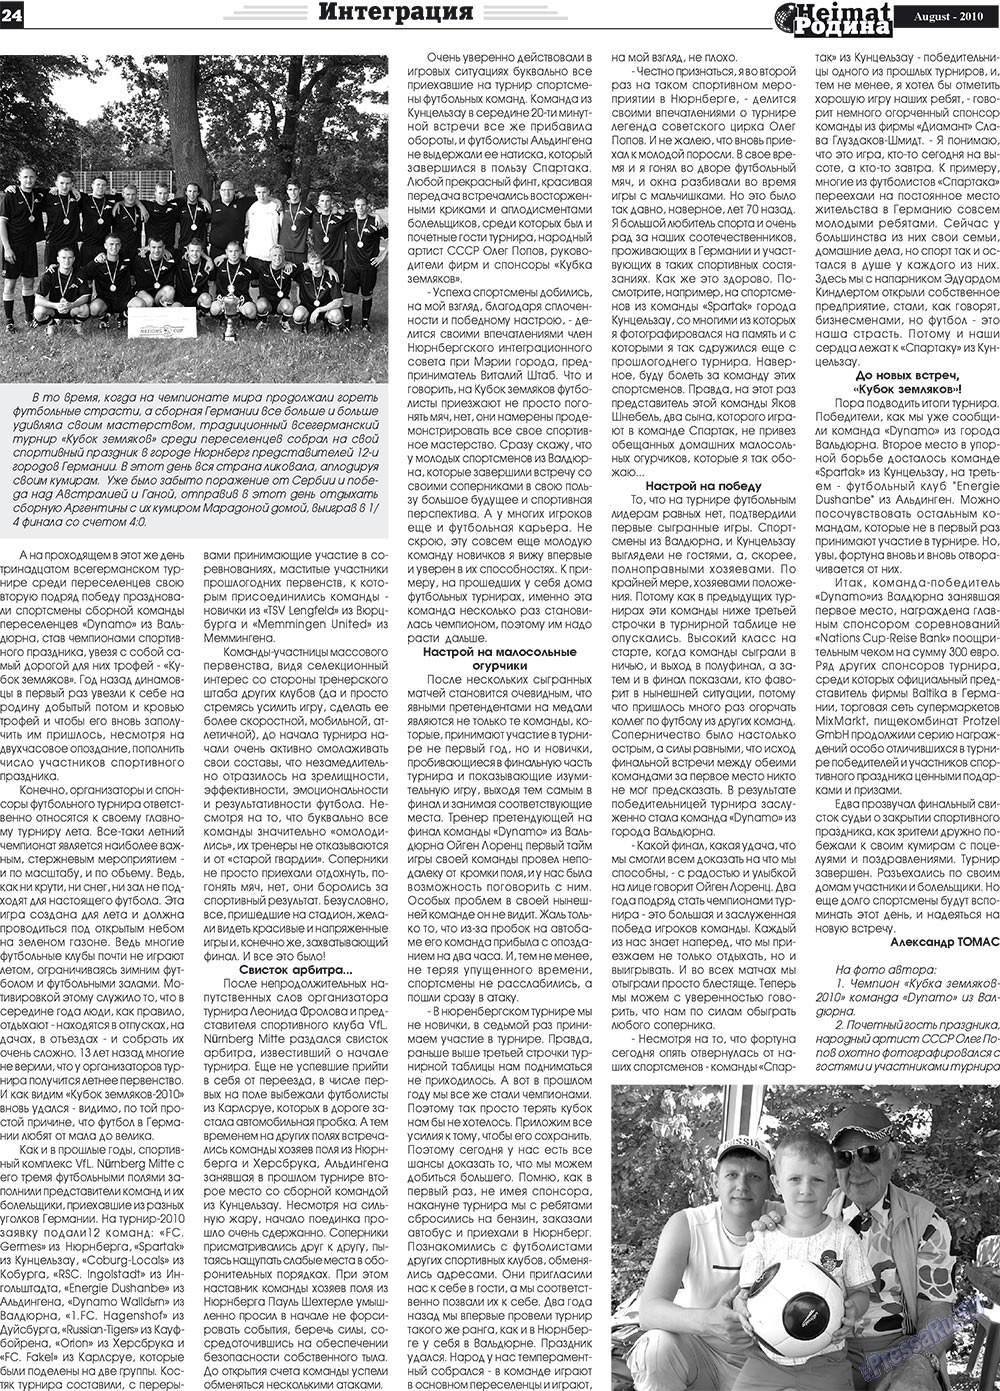 Heimat-Родина (газета). 2010 год, номер 8, стр. 24